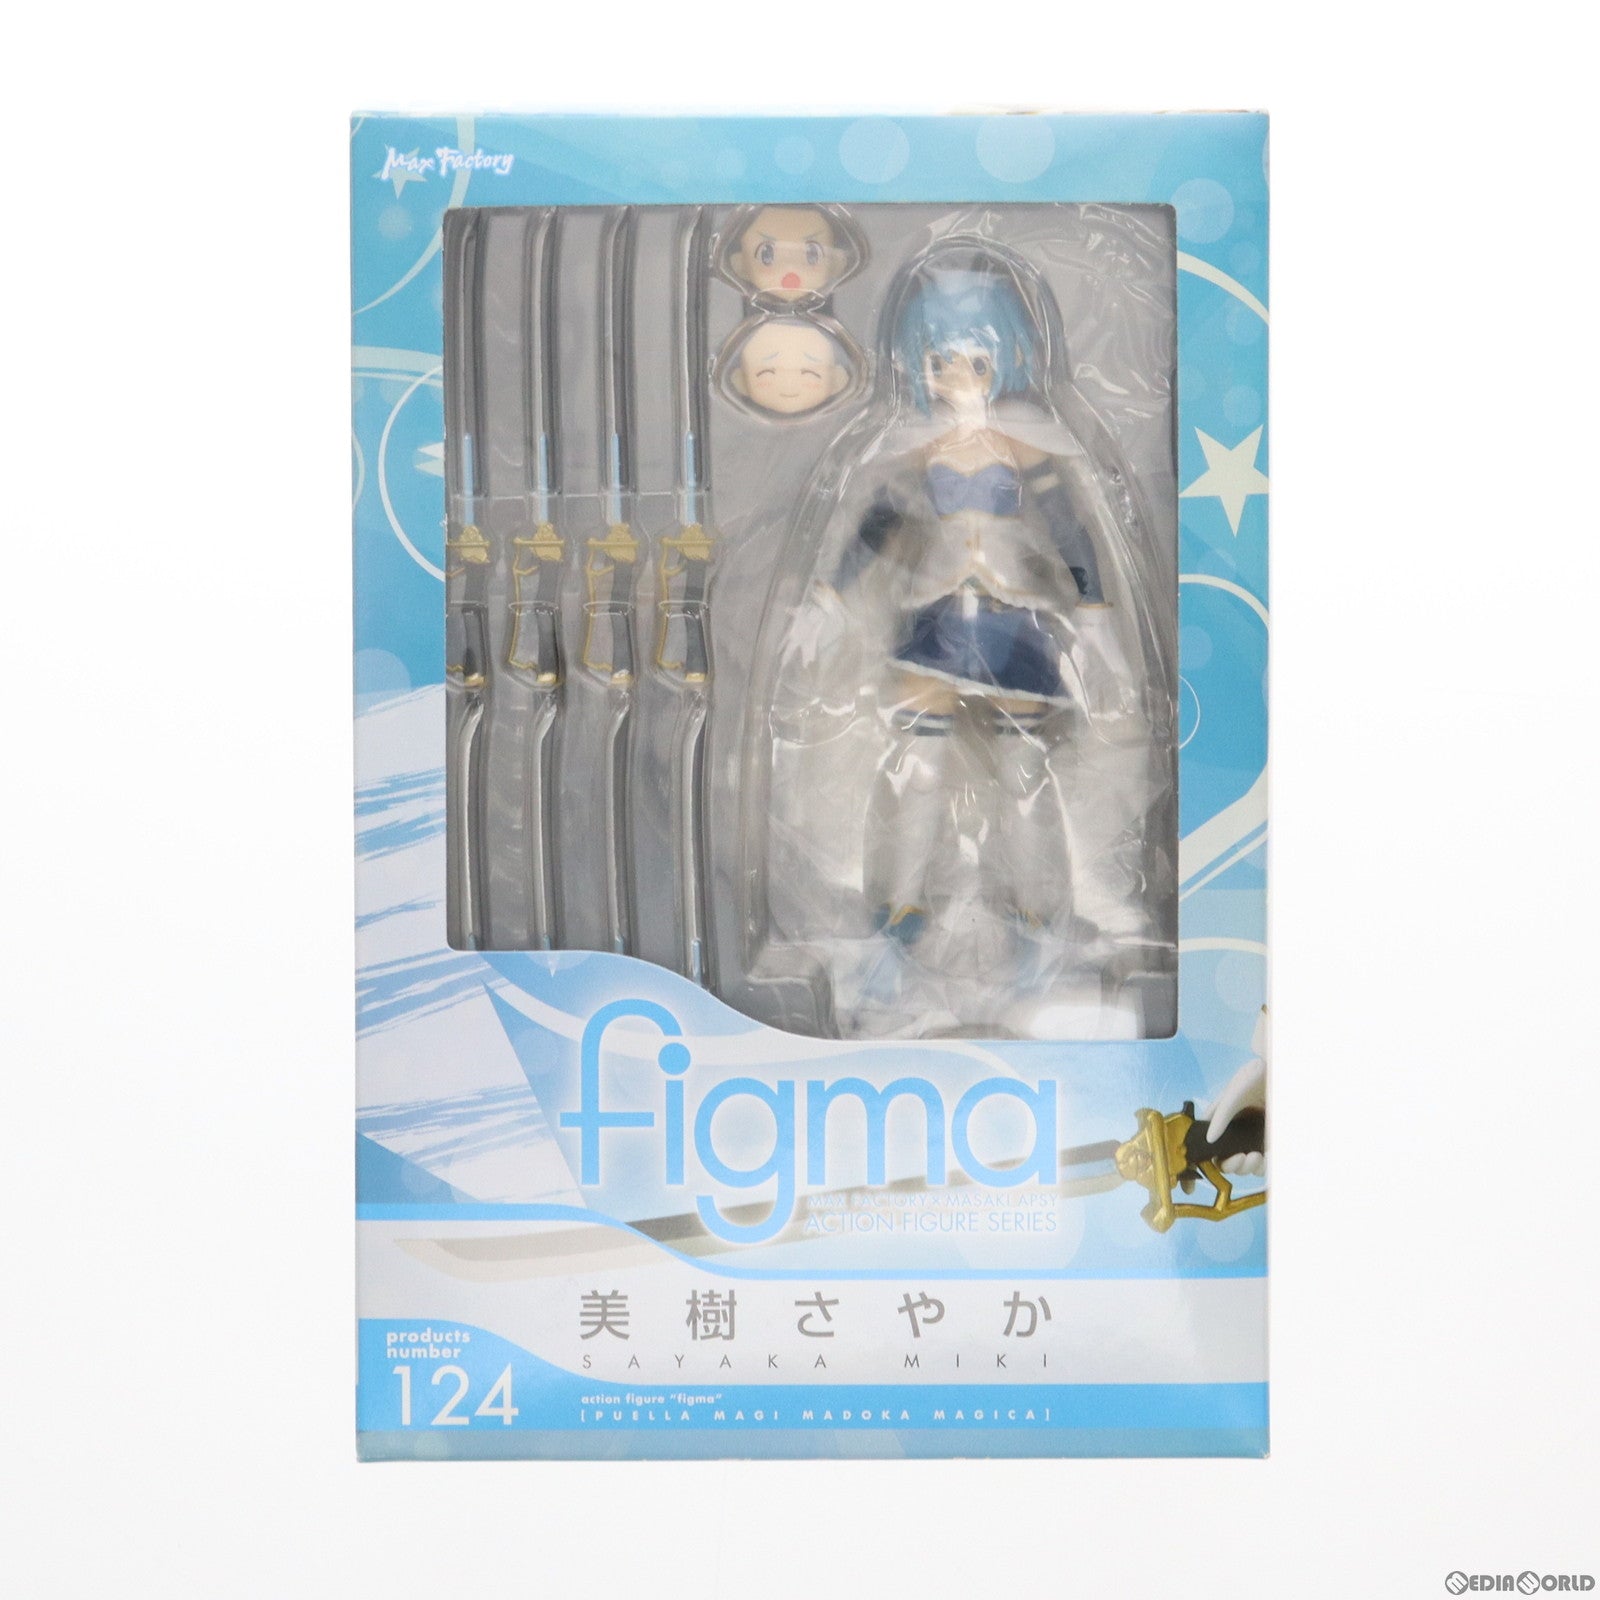 【中古即納】[FIG]figma(フィグマ) 124 美樹さやか(みきさやか) 魔法少女まどか☆マギカ 完成品 可動フィギュア マックスファクトリー(20121004)